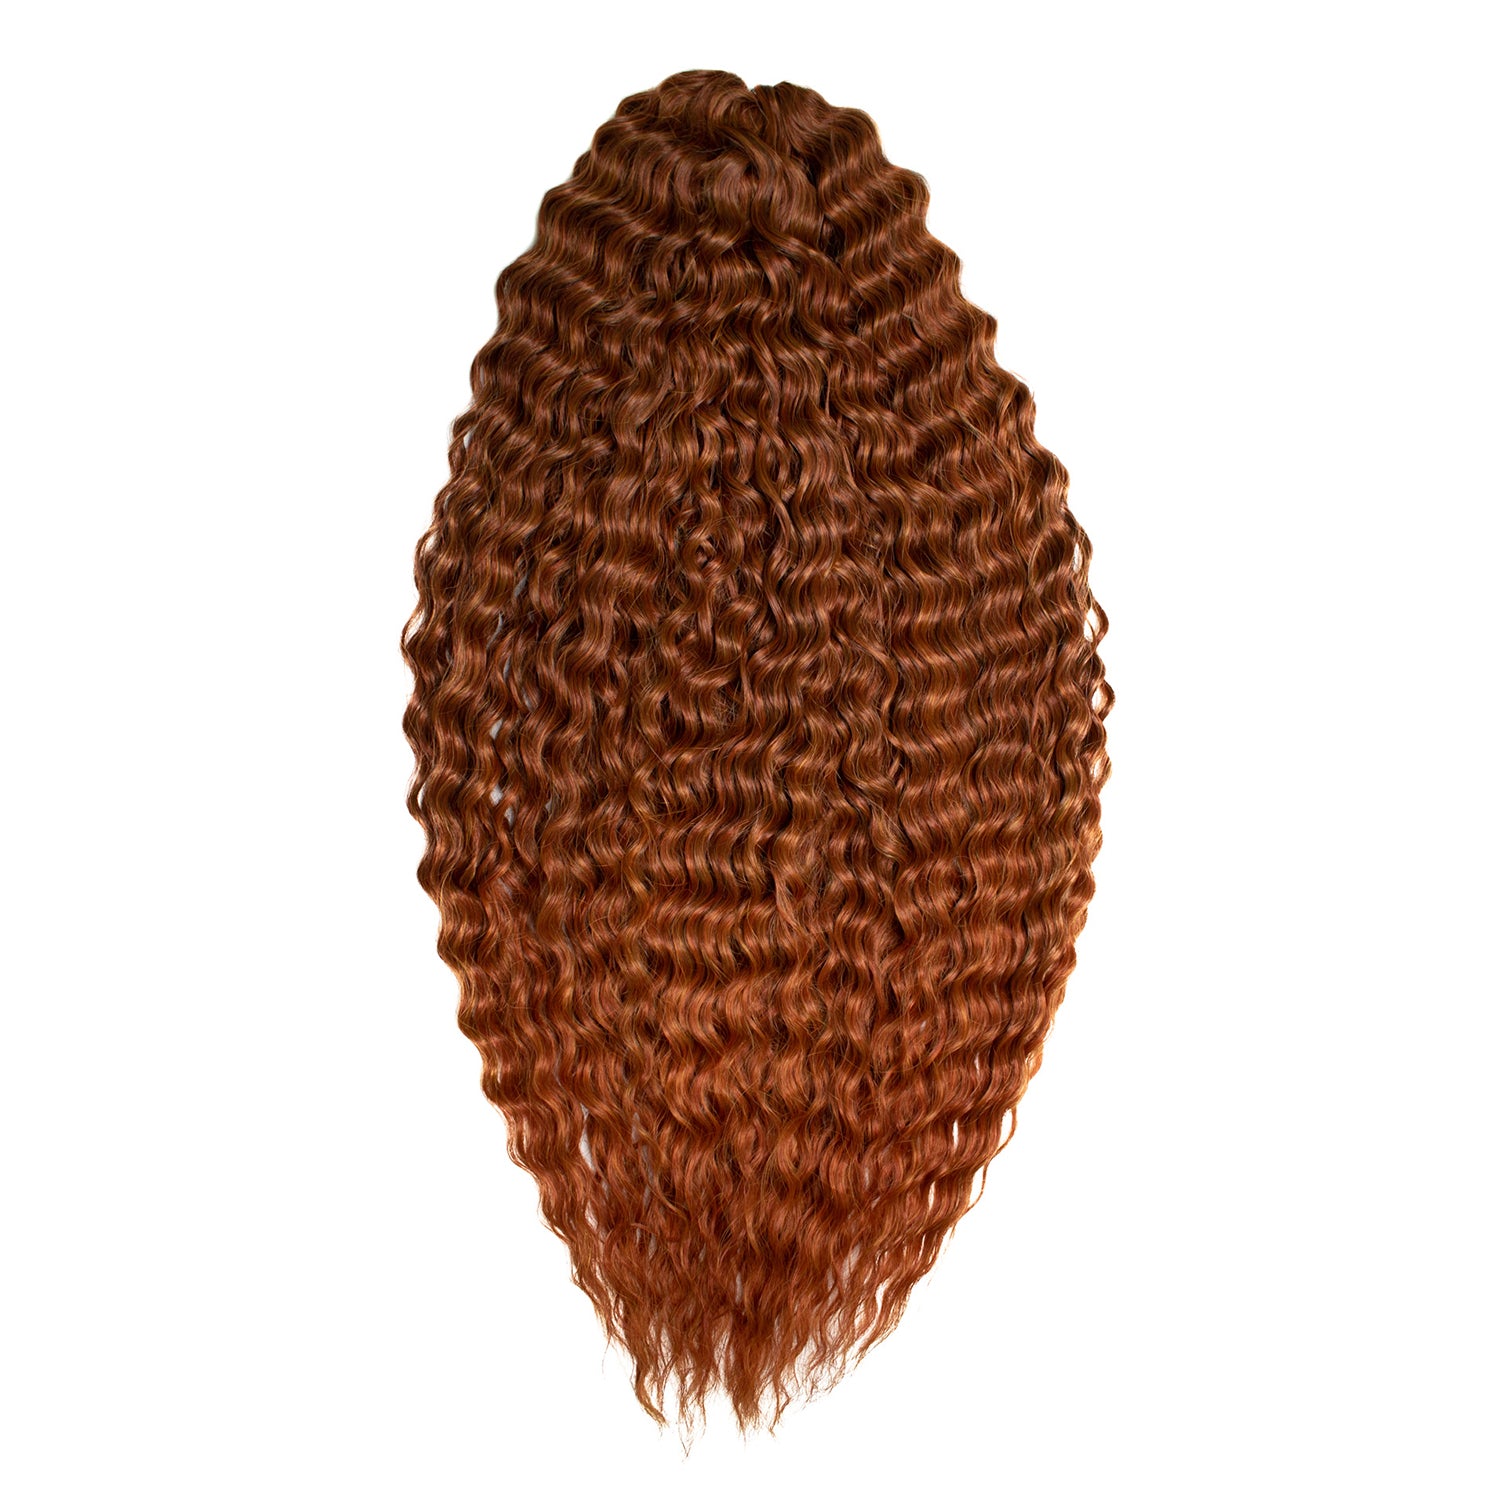 Афрокудри для плетения волос Ariel цвет T433 27 светлый каштан 55см вес 300г афрокудри для плетения волос ariel ариэль fire оранжевый длина 66см вес 300г